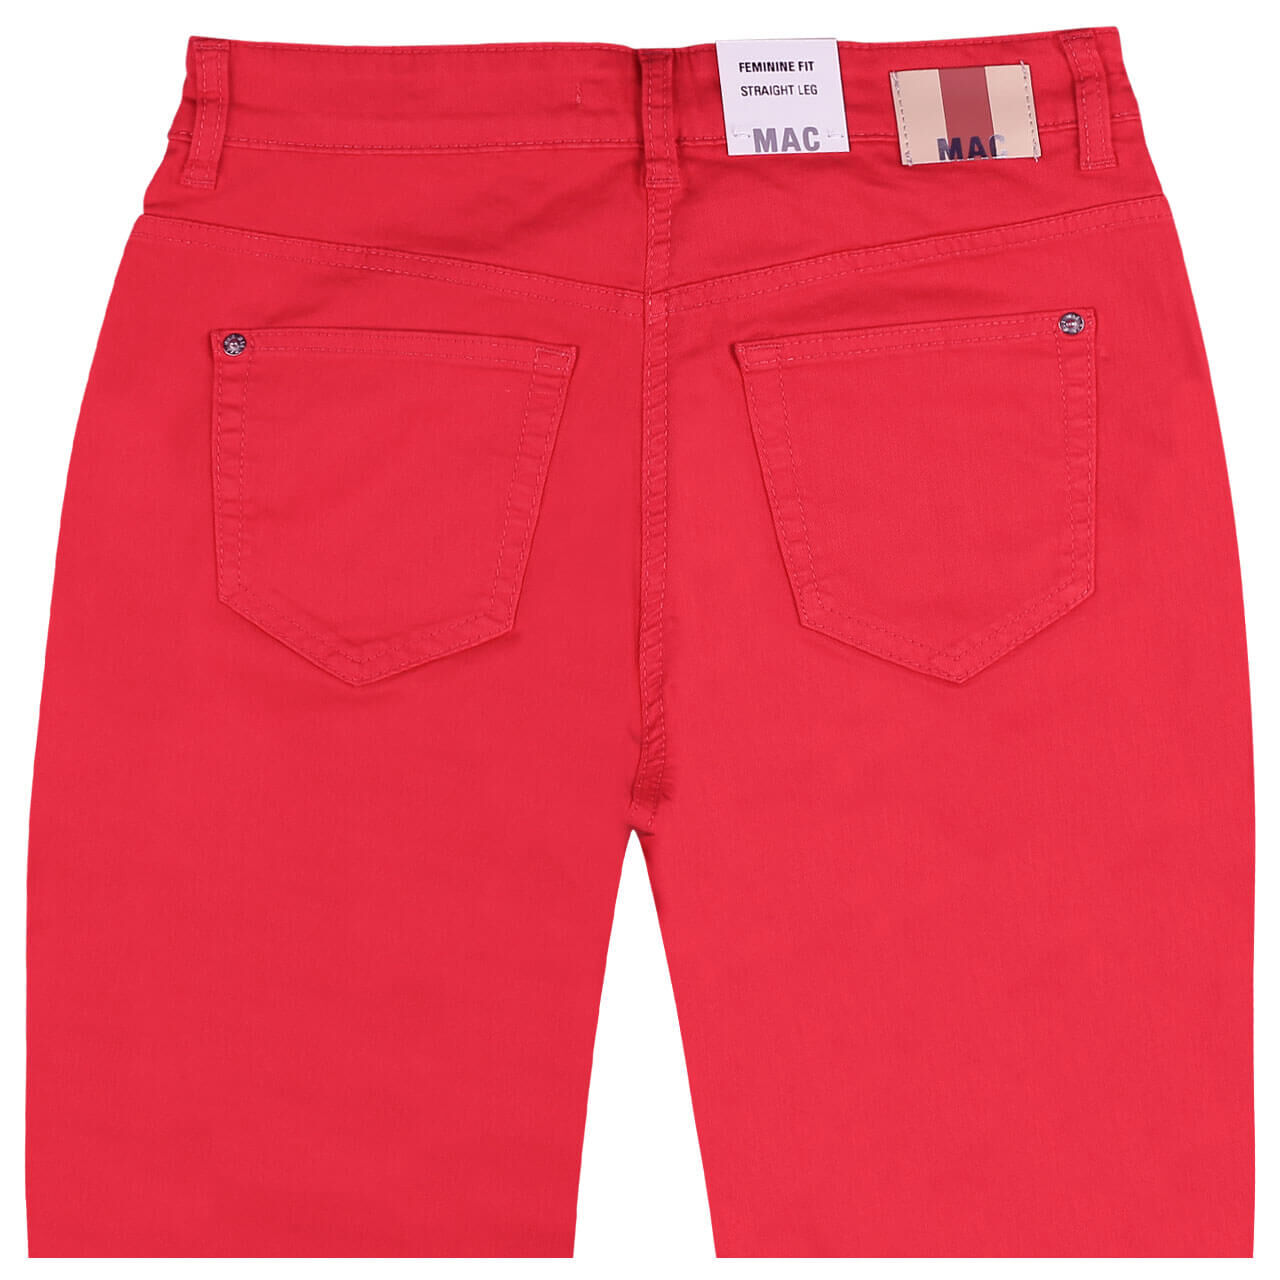 MAC Jeans Stella für Damen in Rot, FarbNr.: 895R